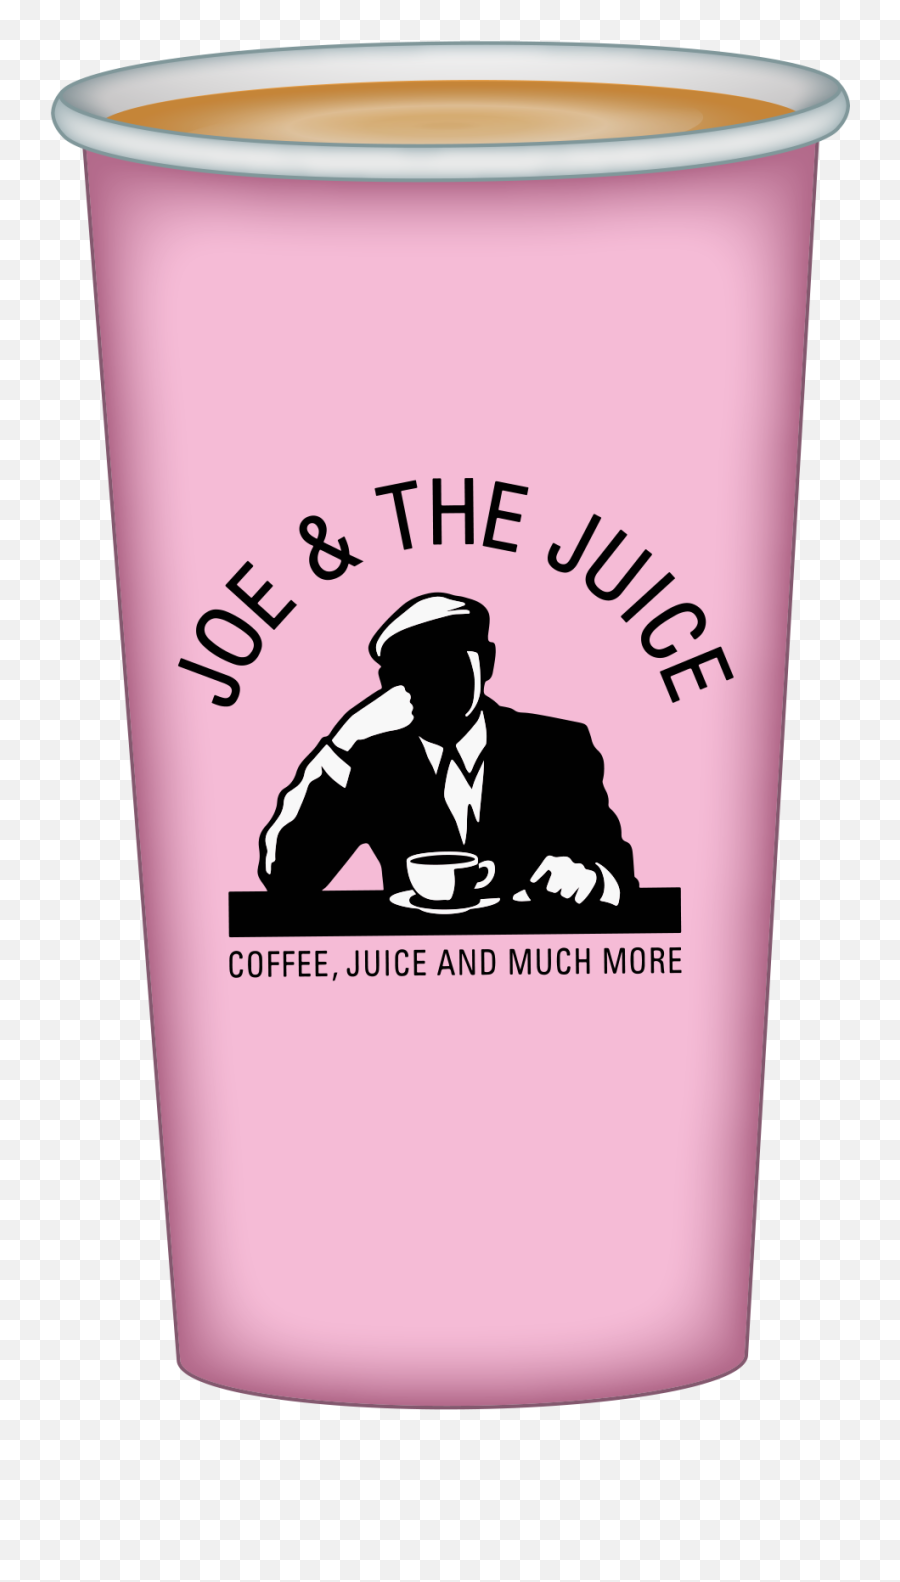 Joemojis By Joe U0026 The Juice Us Holdings Inc - Joe And The Juice Emoji,Emoji Ejuice